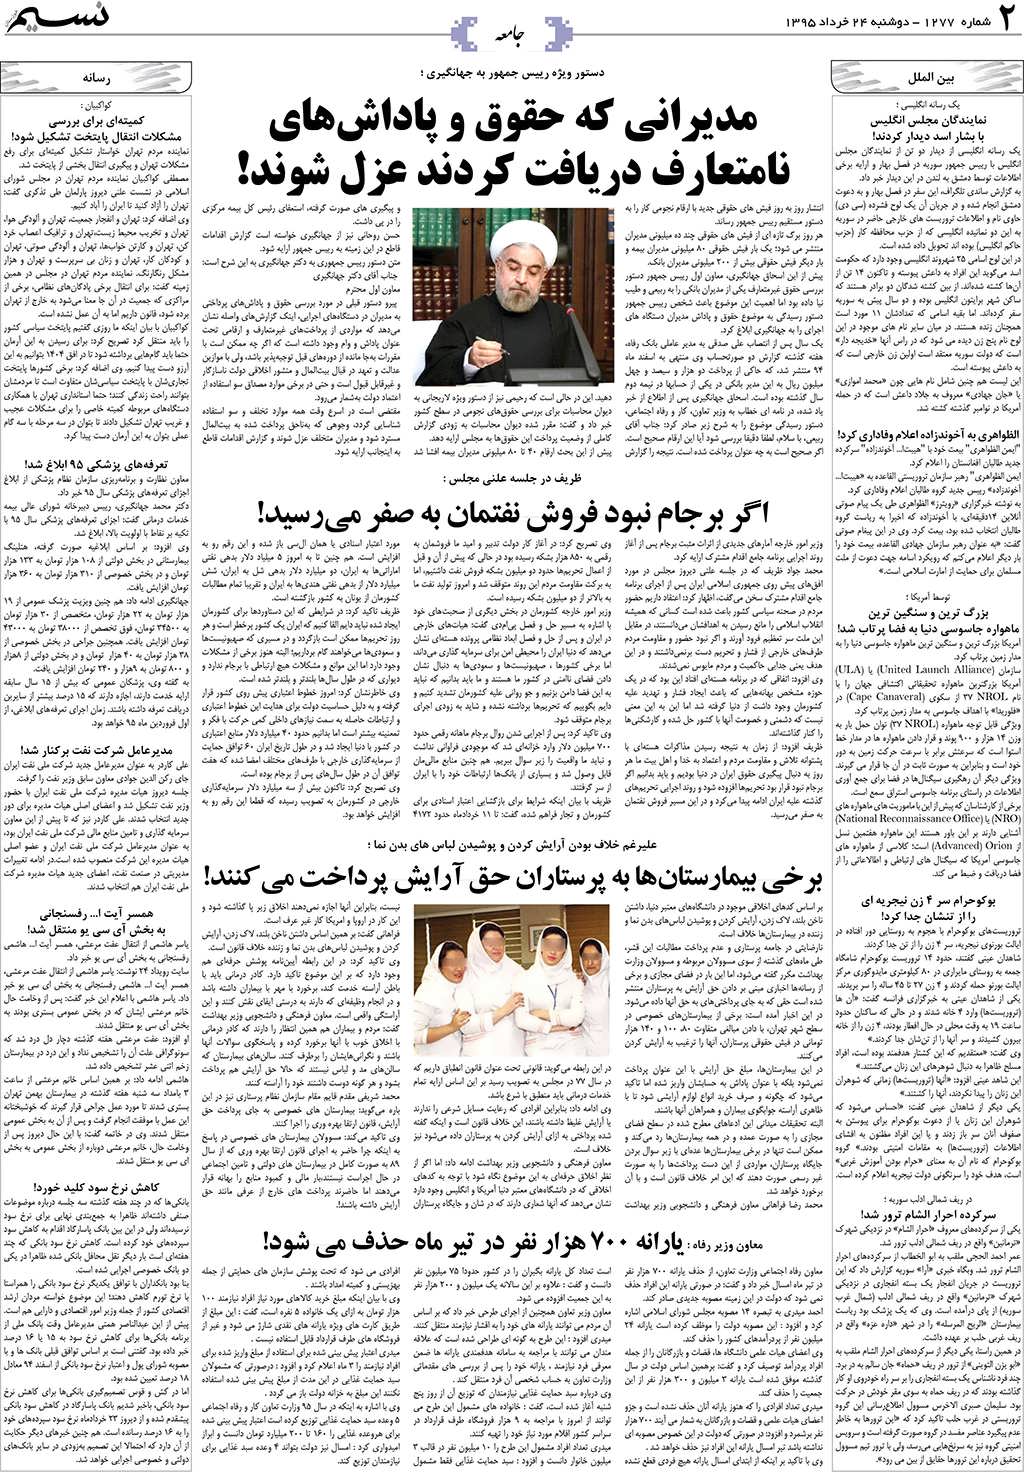 صفحه جامعه روزنامه نسیم شماره 1277